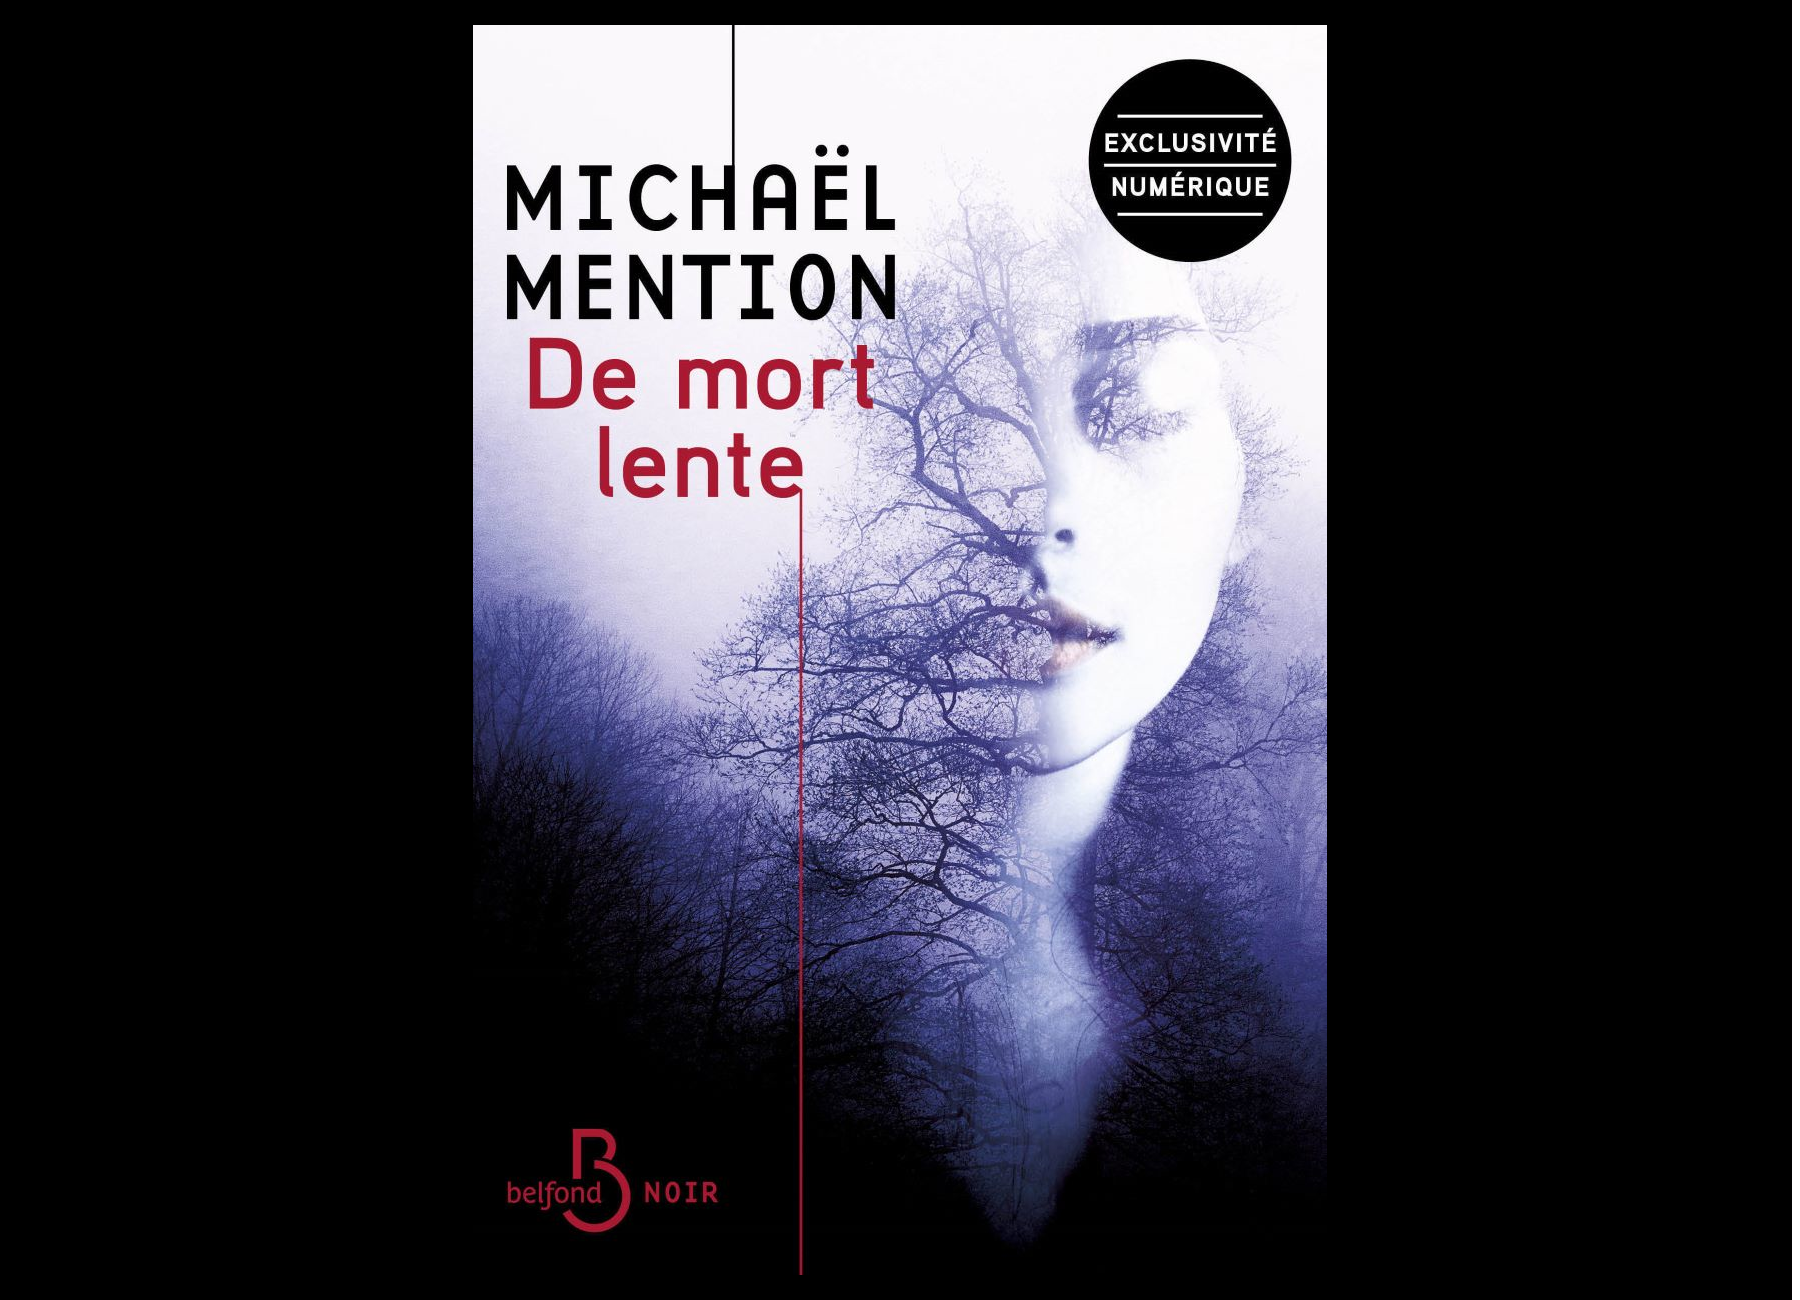 DE MORT LENTE・Michaël Mention